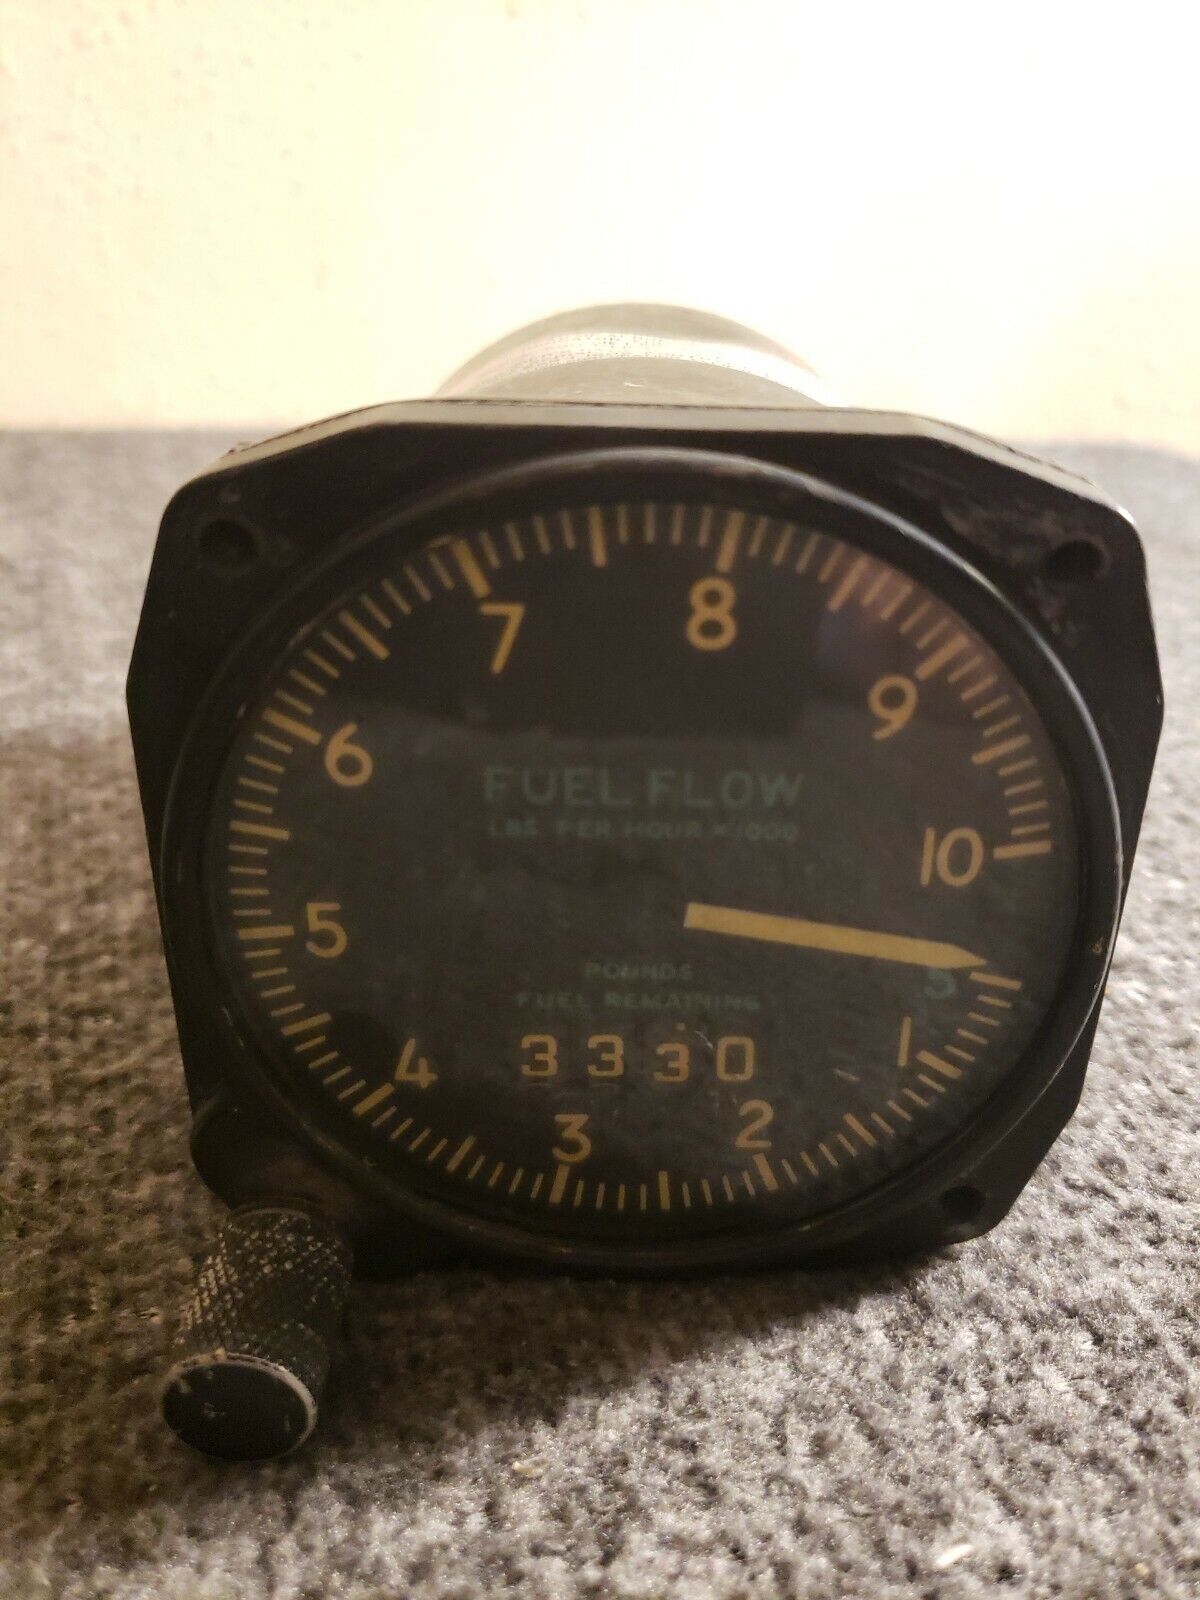 Bendix Aviation Fuel Flowmeter US. Navy Part No 36702-1B-1-A1